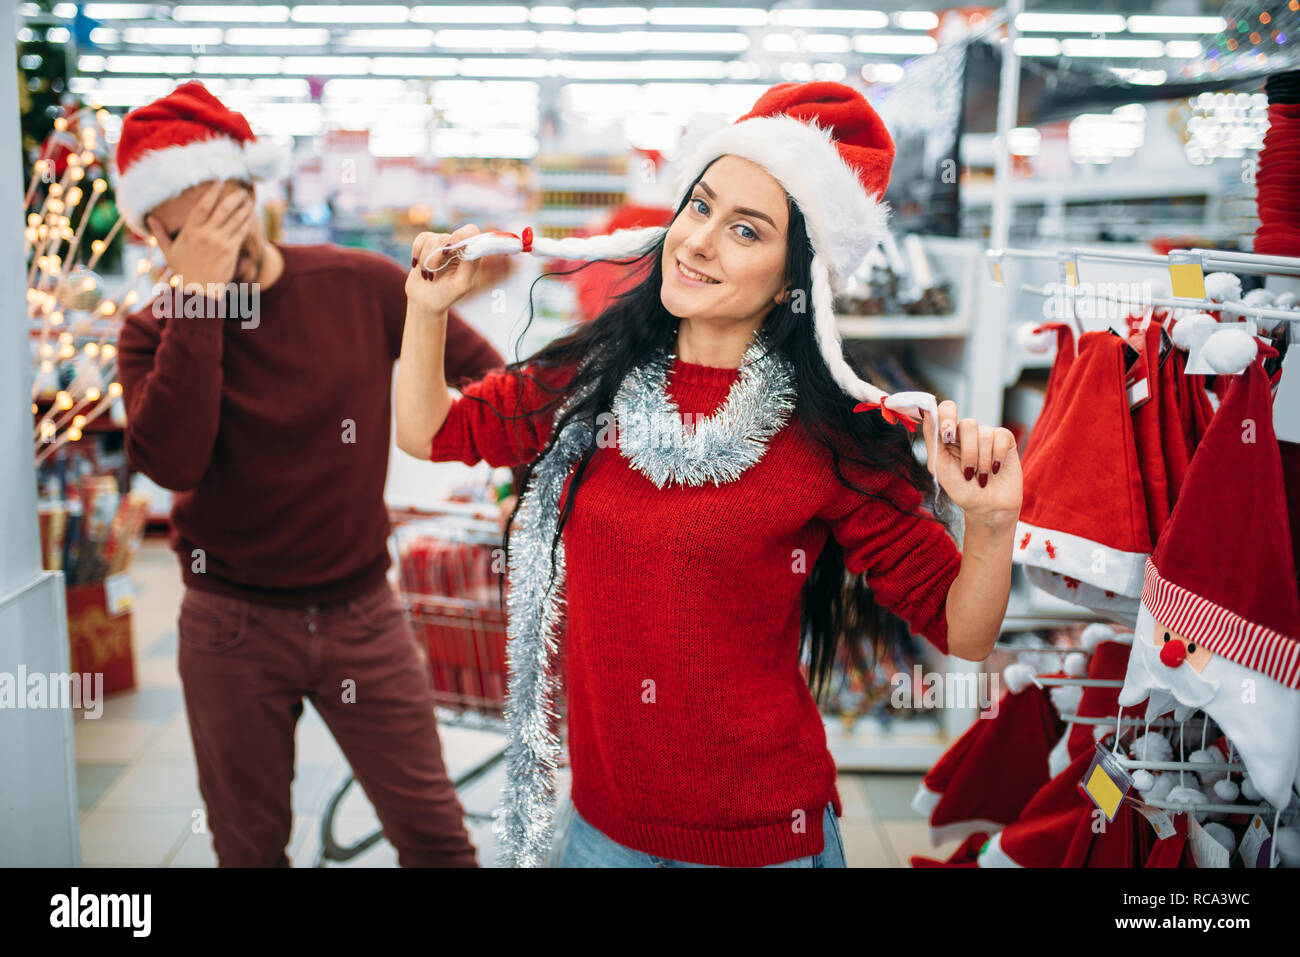 Lustig junge Paar versuchen, auf Weihnachten Kleidung im Supermarkt,  Familie Tradition. Dezember shopping Urlaub waren und Dekorationen  Stockfotografie - Alamy